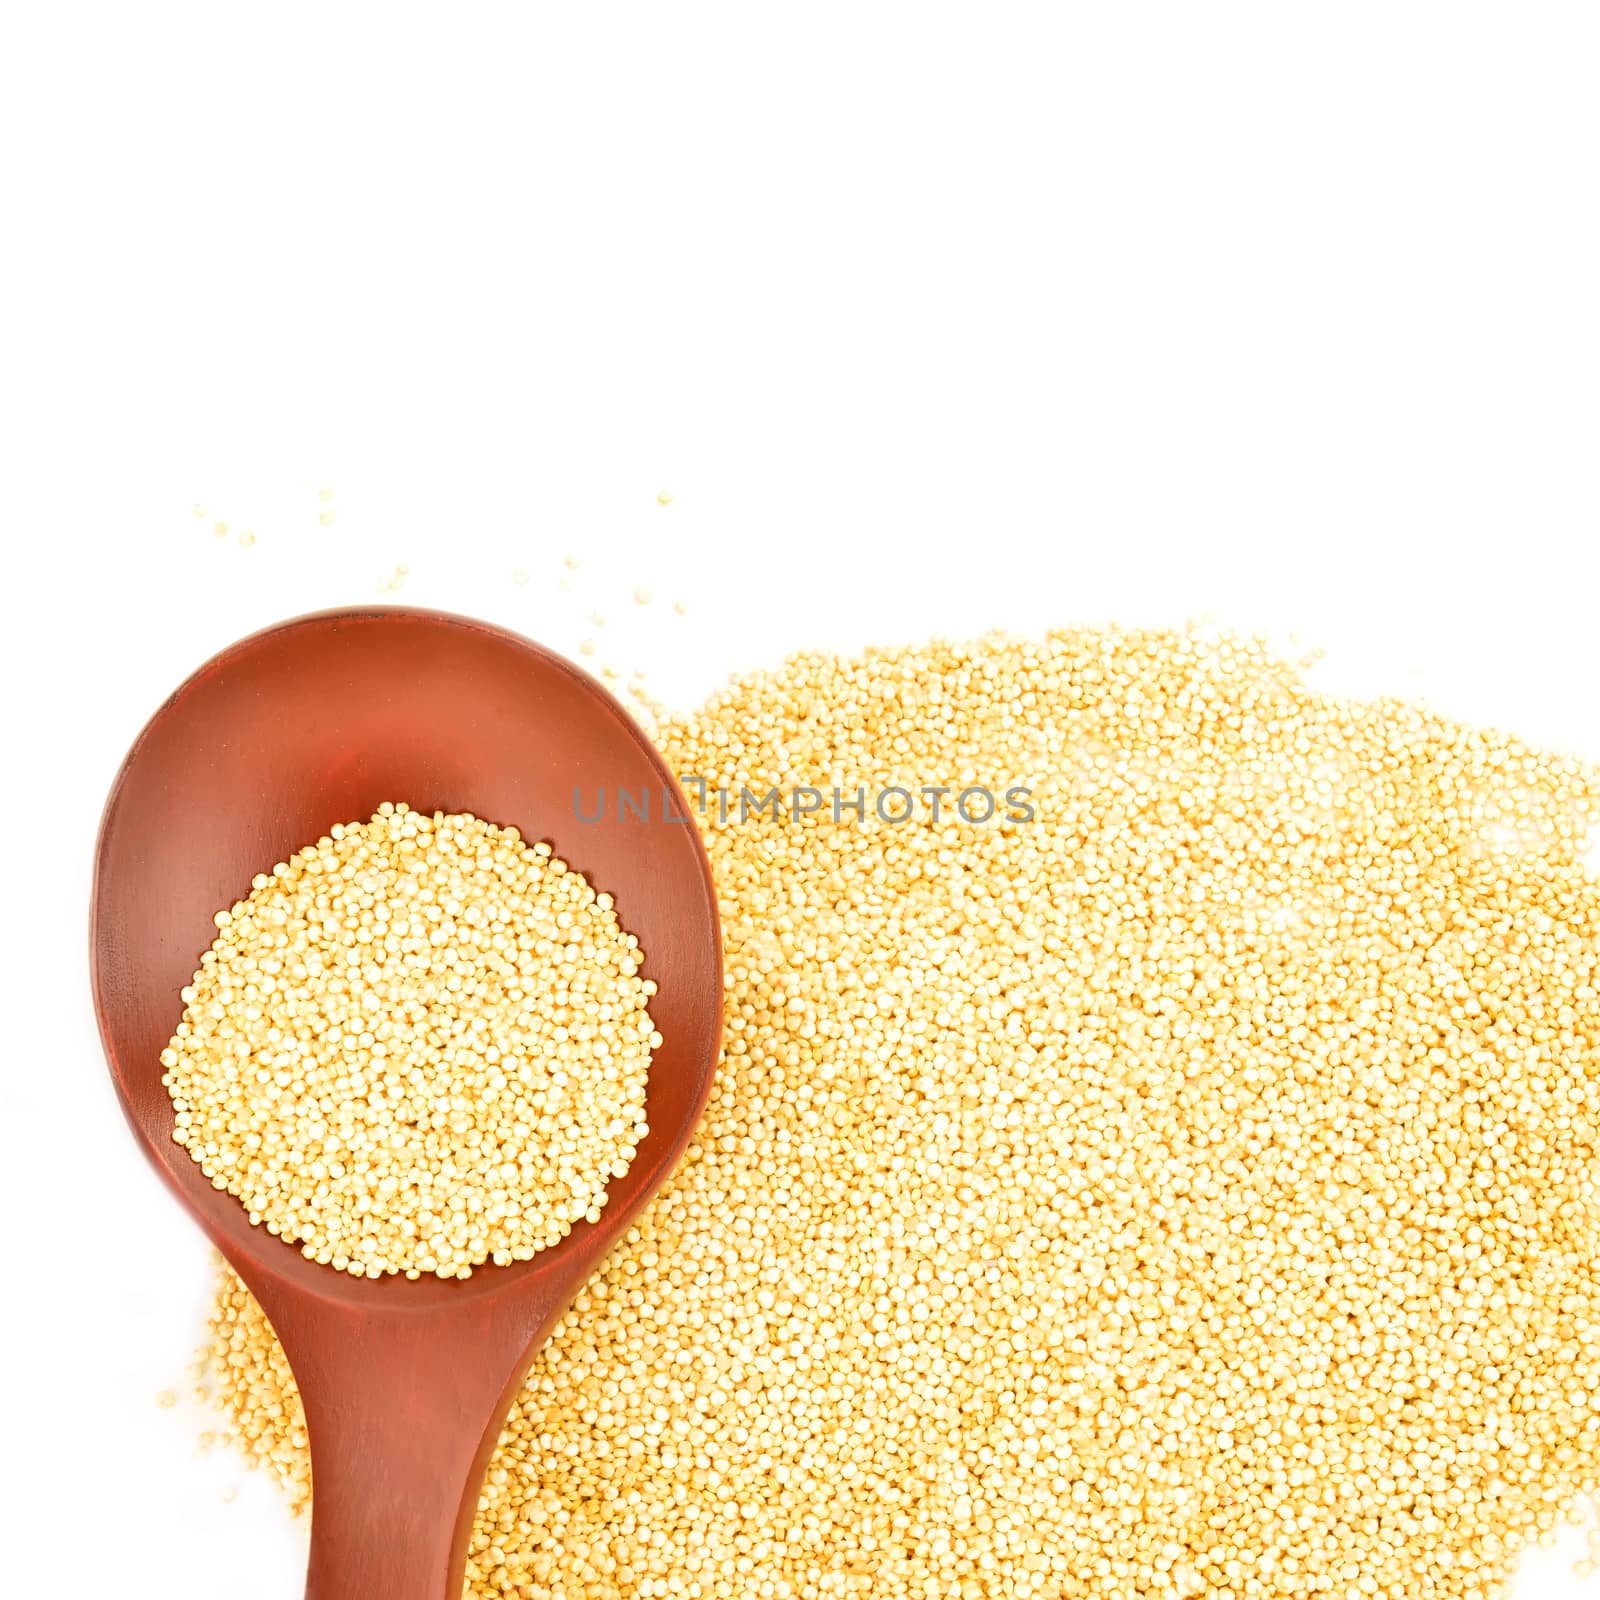 Quinoa background by Carche